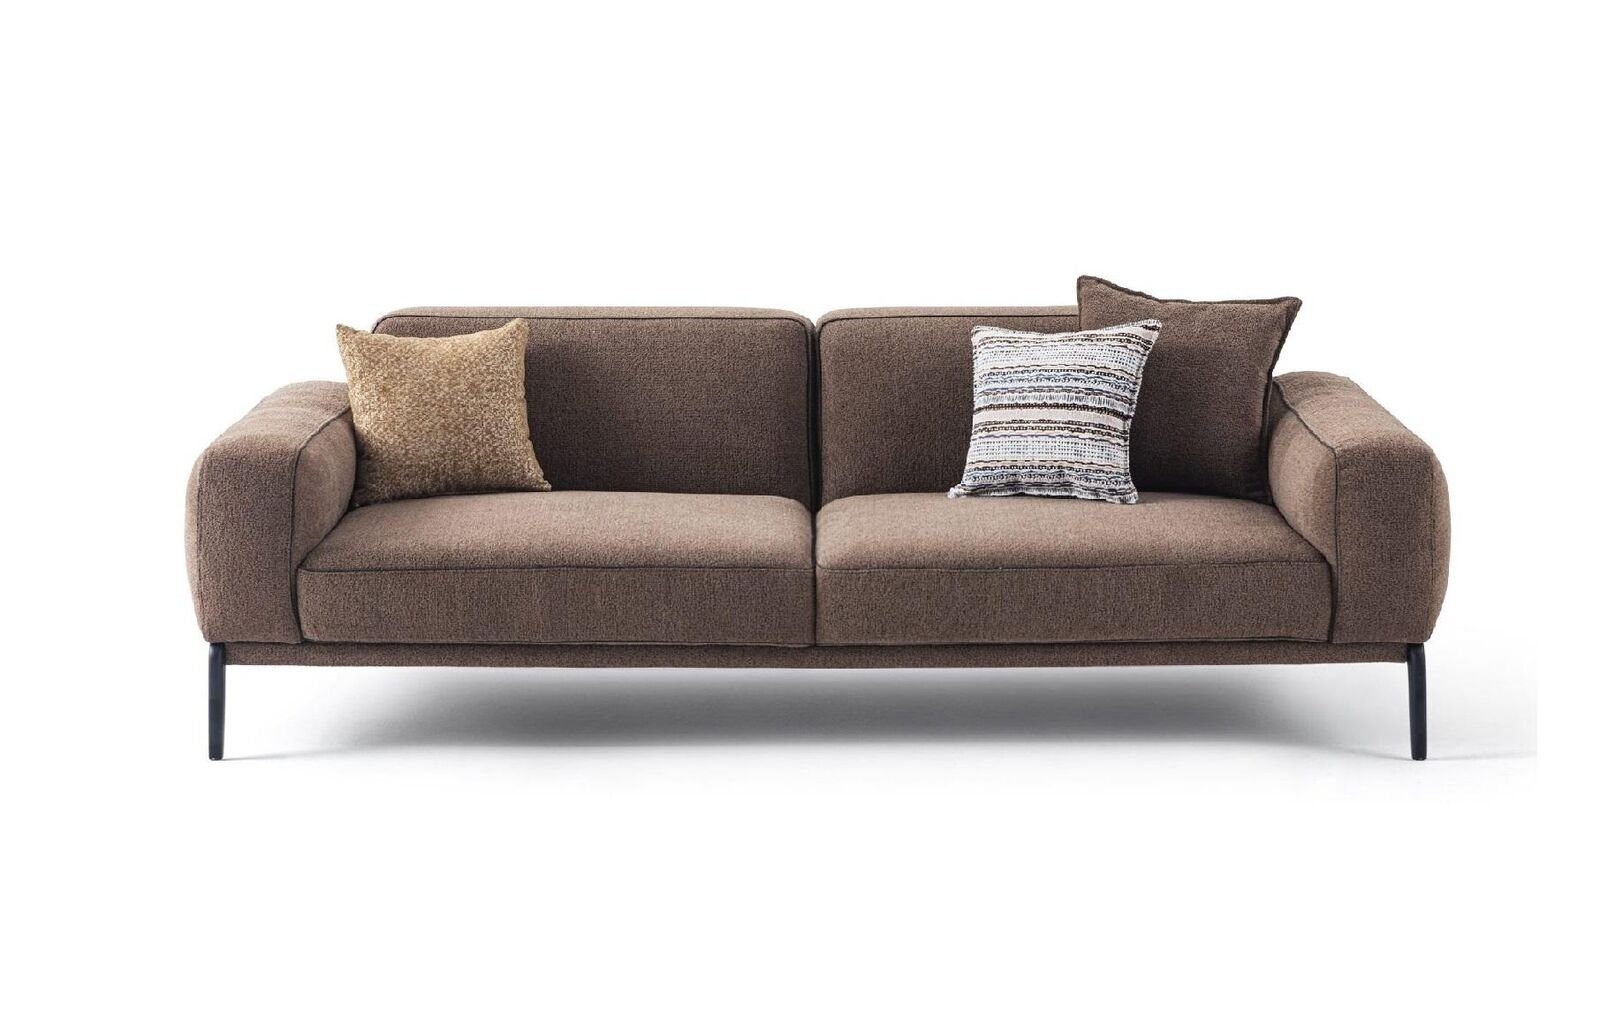 JVmoebel Sofa Dreisitzer Sofa Sitzer Modern, Braun Stoffsofa 1 3 Stoff in Europa Made Couch Teile